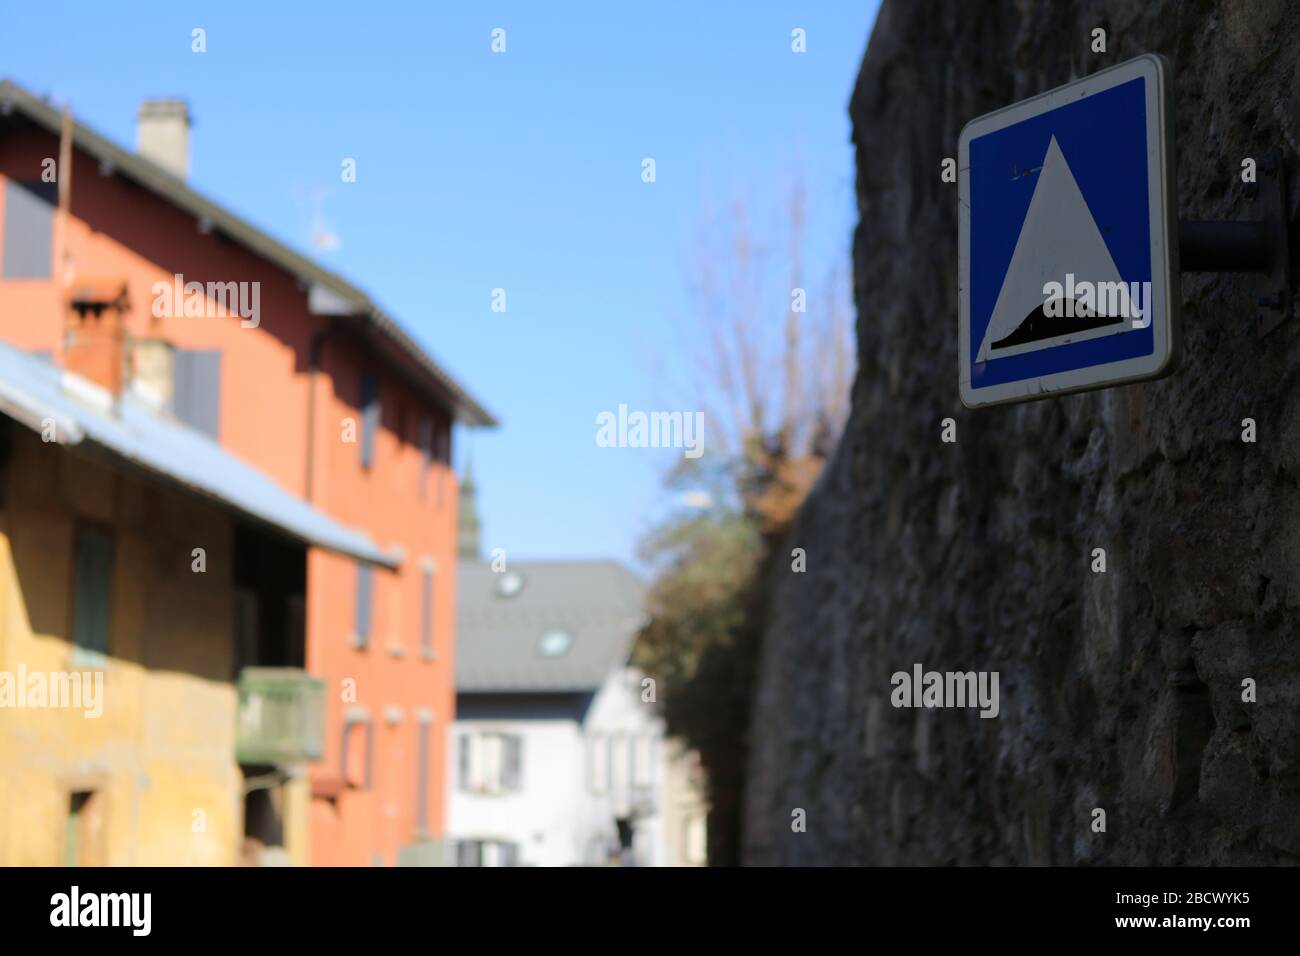 Signalisation routière : dos d'âne. Saint-Gervais-les-Bains. Haute-Savoie. France. Stock Photo